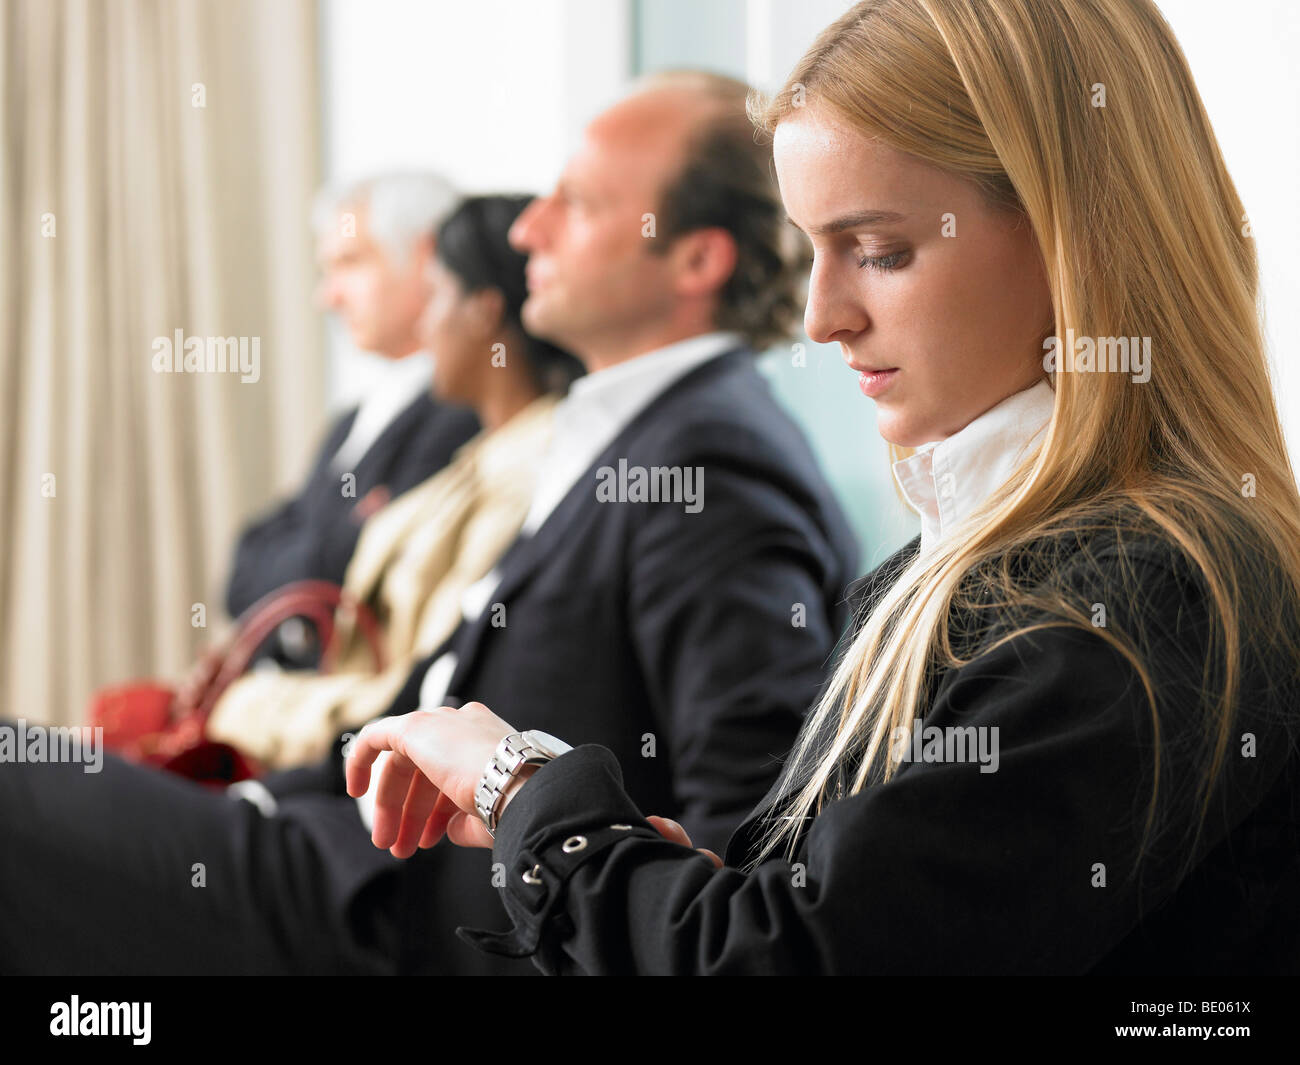 Leute sitzen in einem Wartezimmer Stockfoto